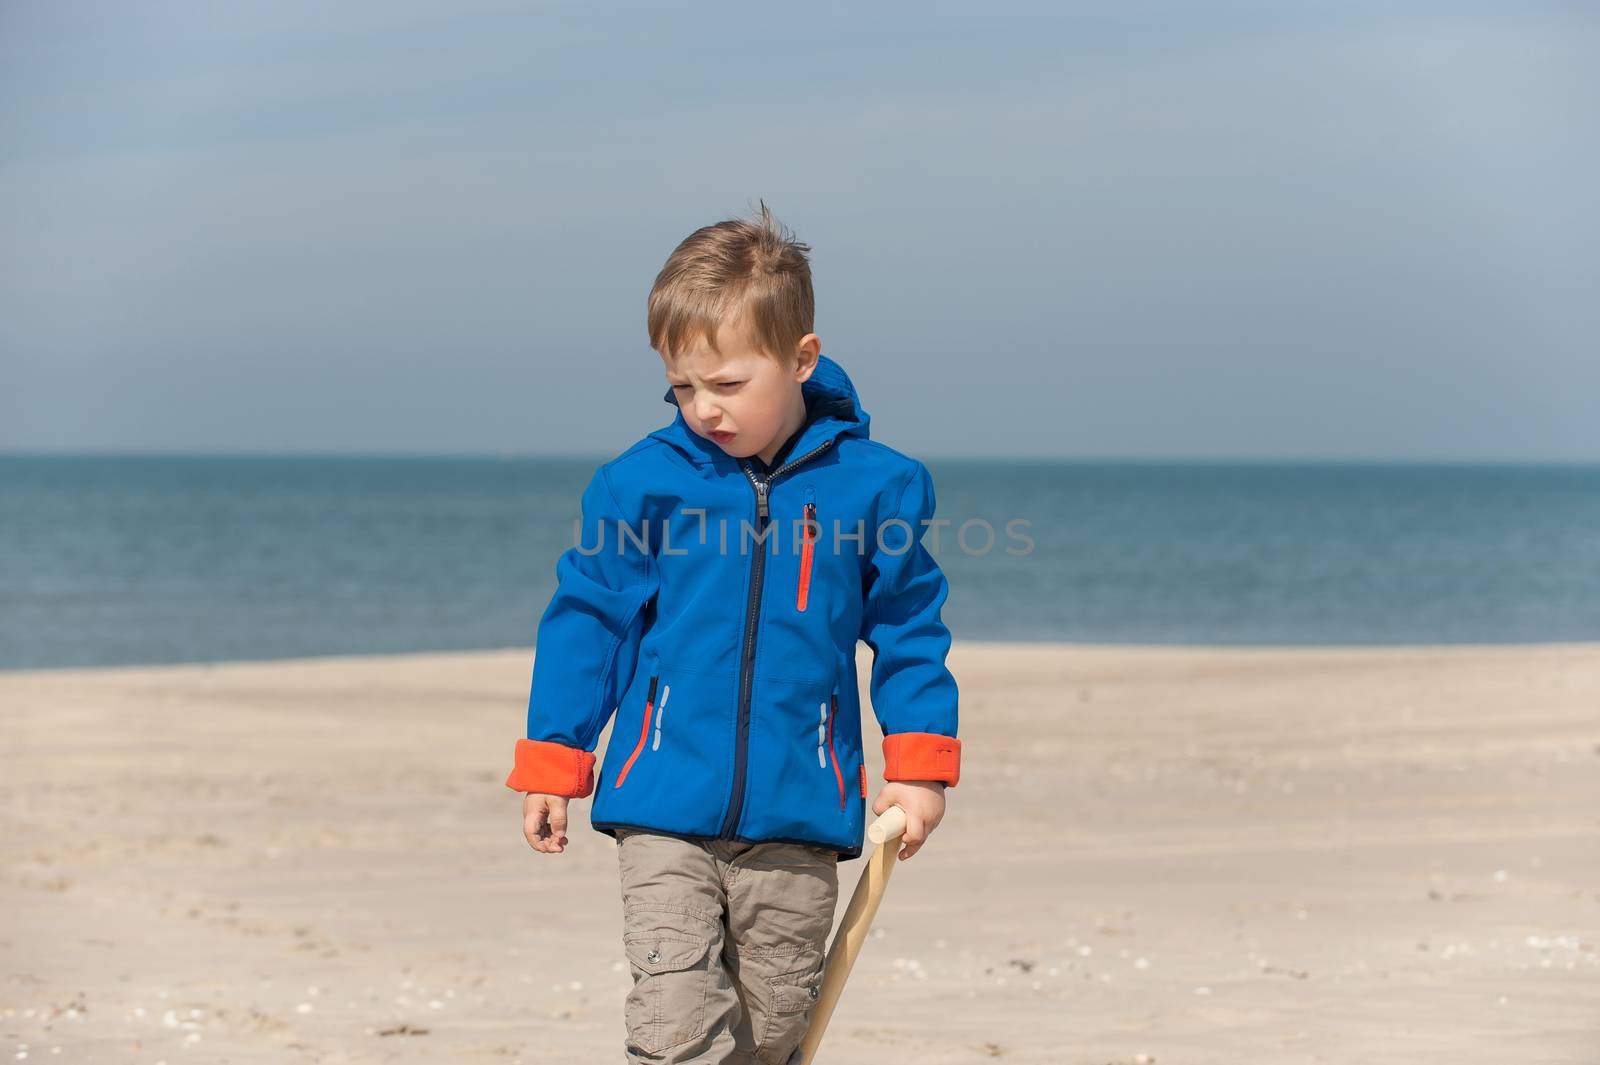 Portr��t eines Jungen am Sandstrand